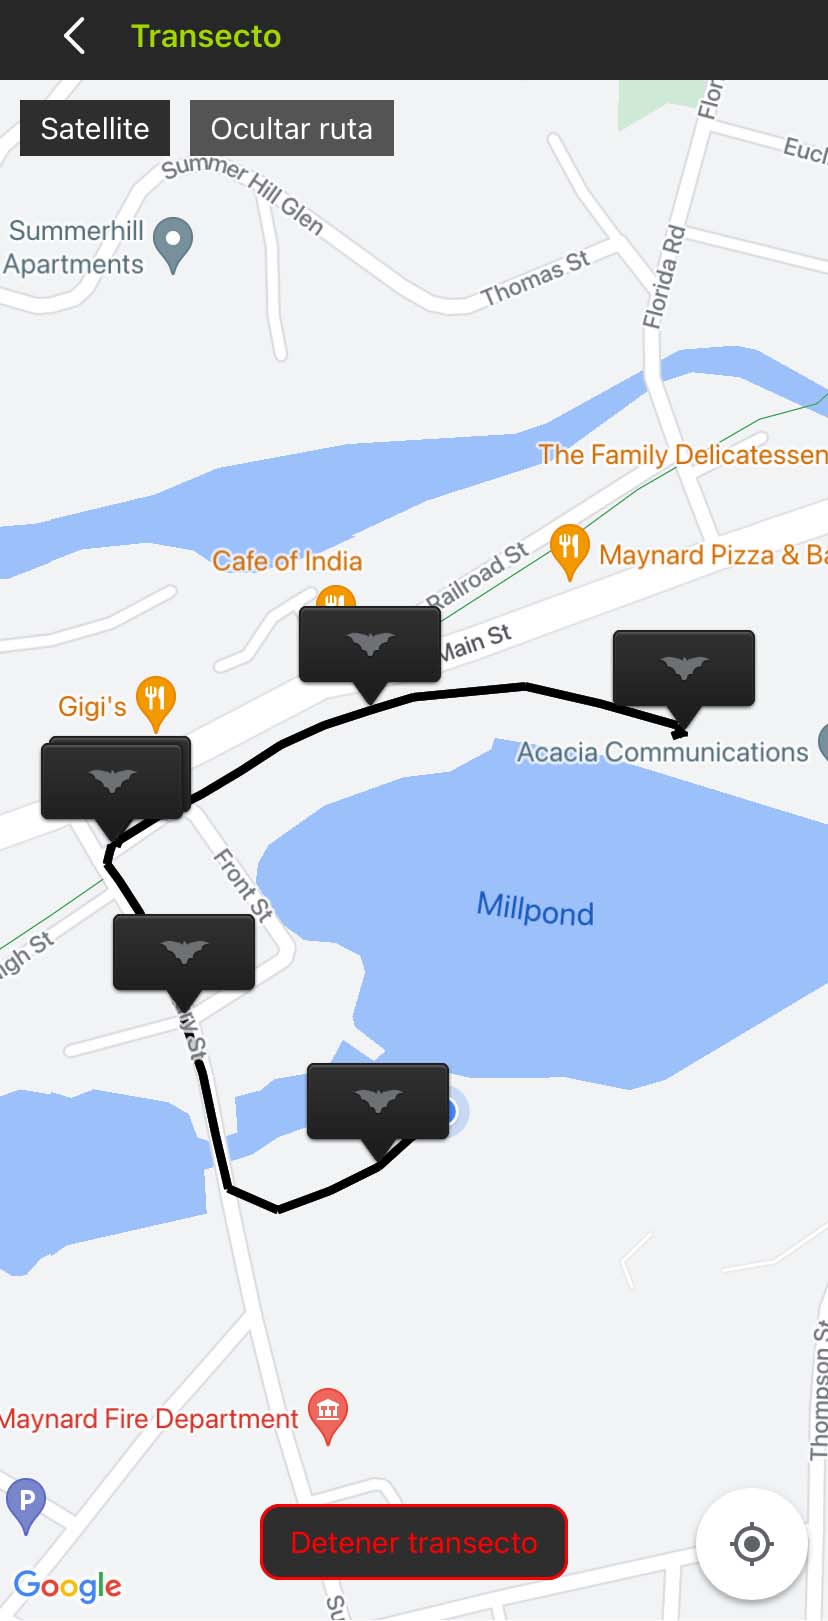 Captura de pantalla de la interfaz de Transecto. Una vista de mapa por satélite muestra un camino blanco alrededor de un vecindario residencial y un estanque. Las banderas negras con iconos de murciélago indican la ubicación de los archivos de audio a lo largo de la ruta.